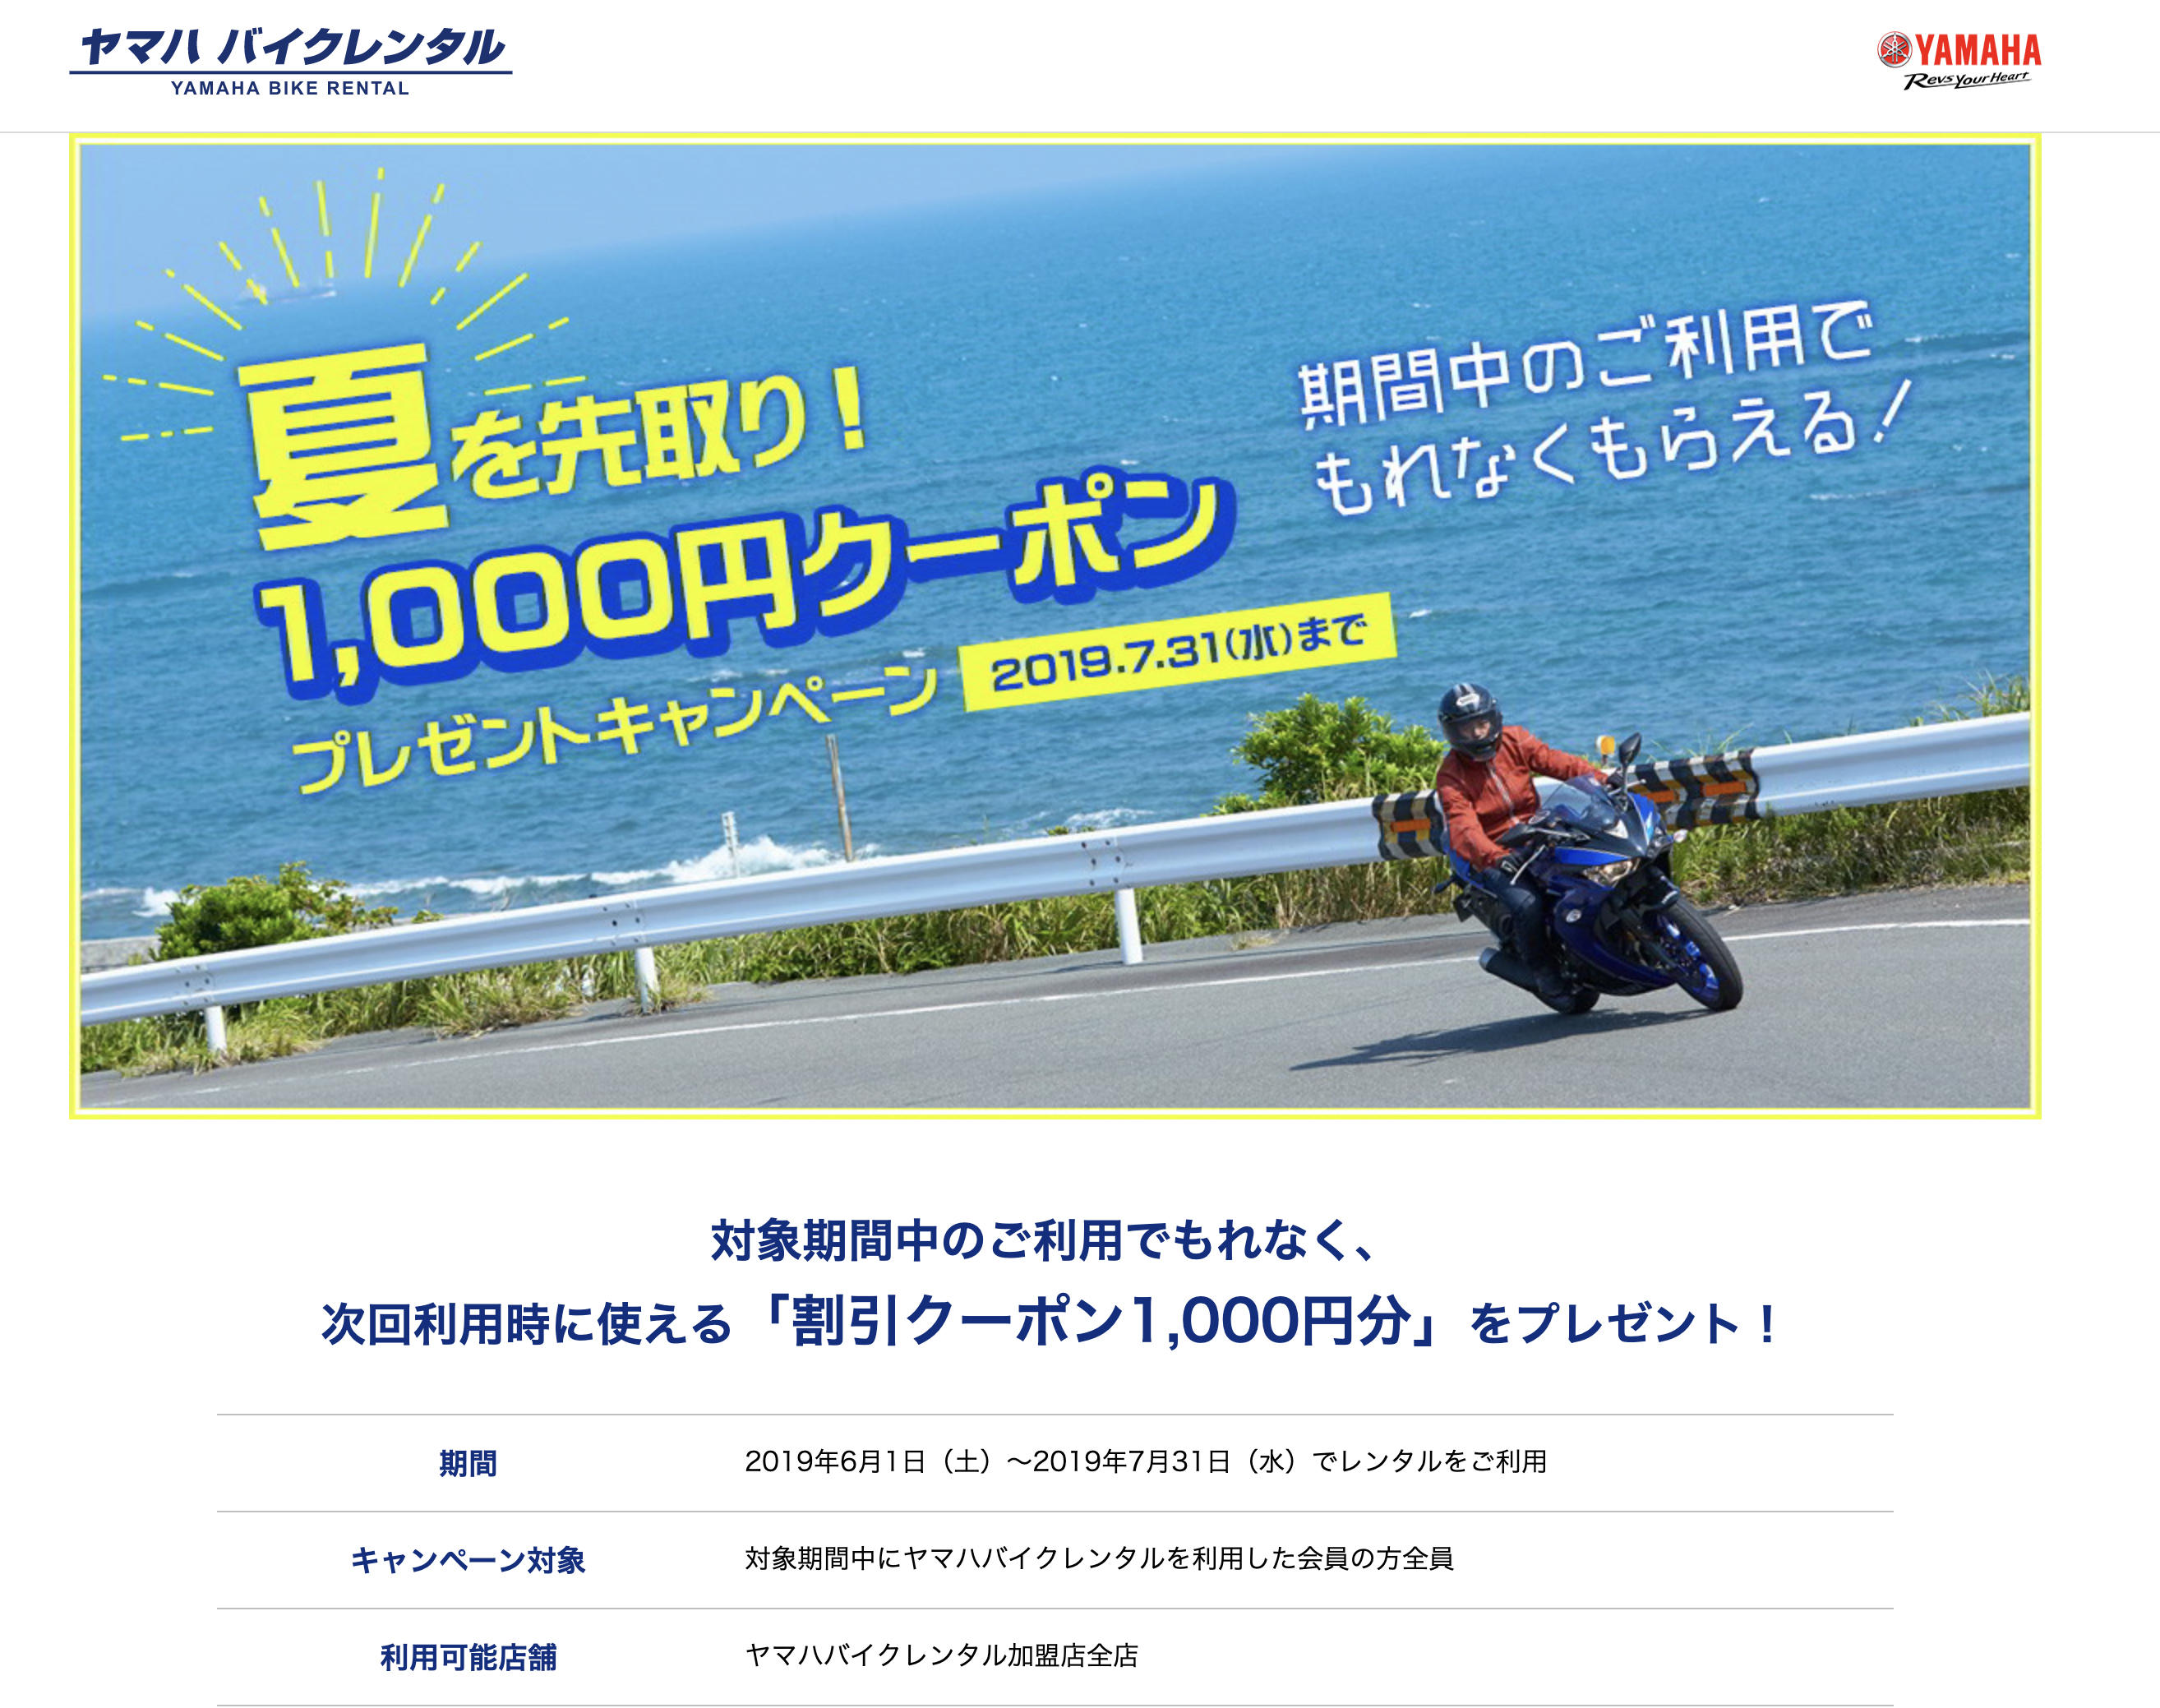 ただいま「夏を先取り1,000円クーポンキャンペーン」を実施中です。